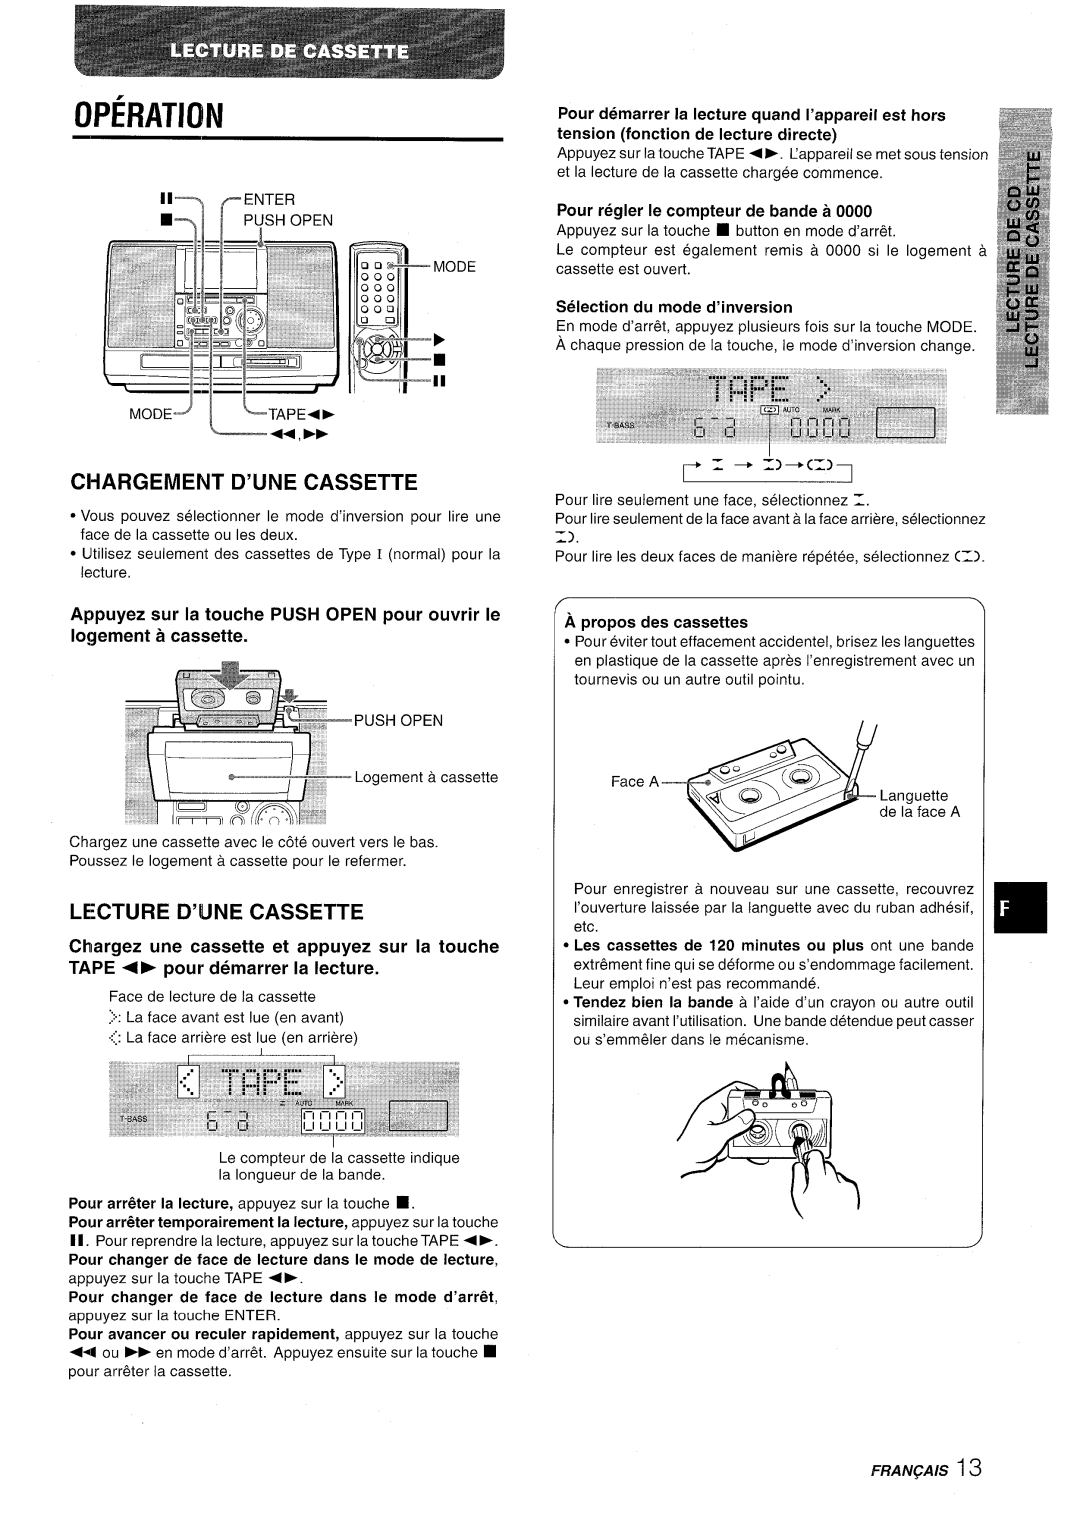 Aiwa CSD-MD50 manual Ci-Iargement D’Une Cassette, Lecture D’Ljne Cassette, Operation, Pour regler Ie compteur de bande a 